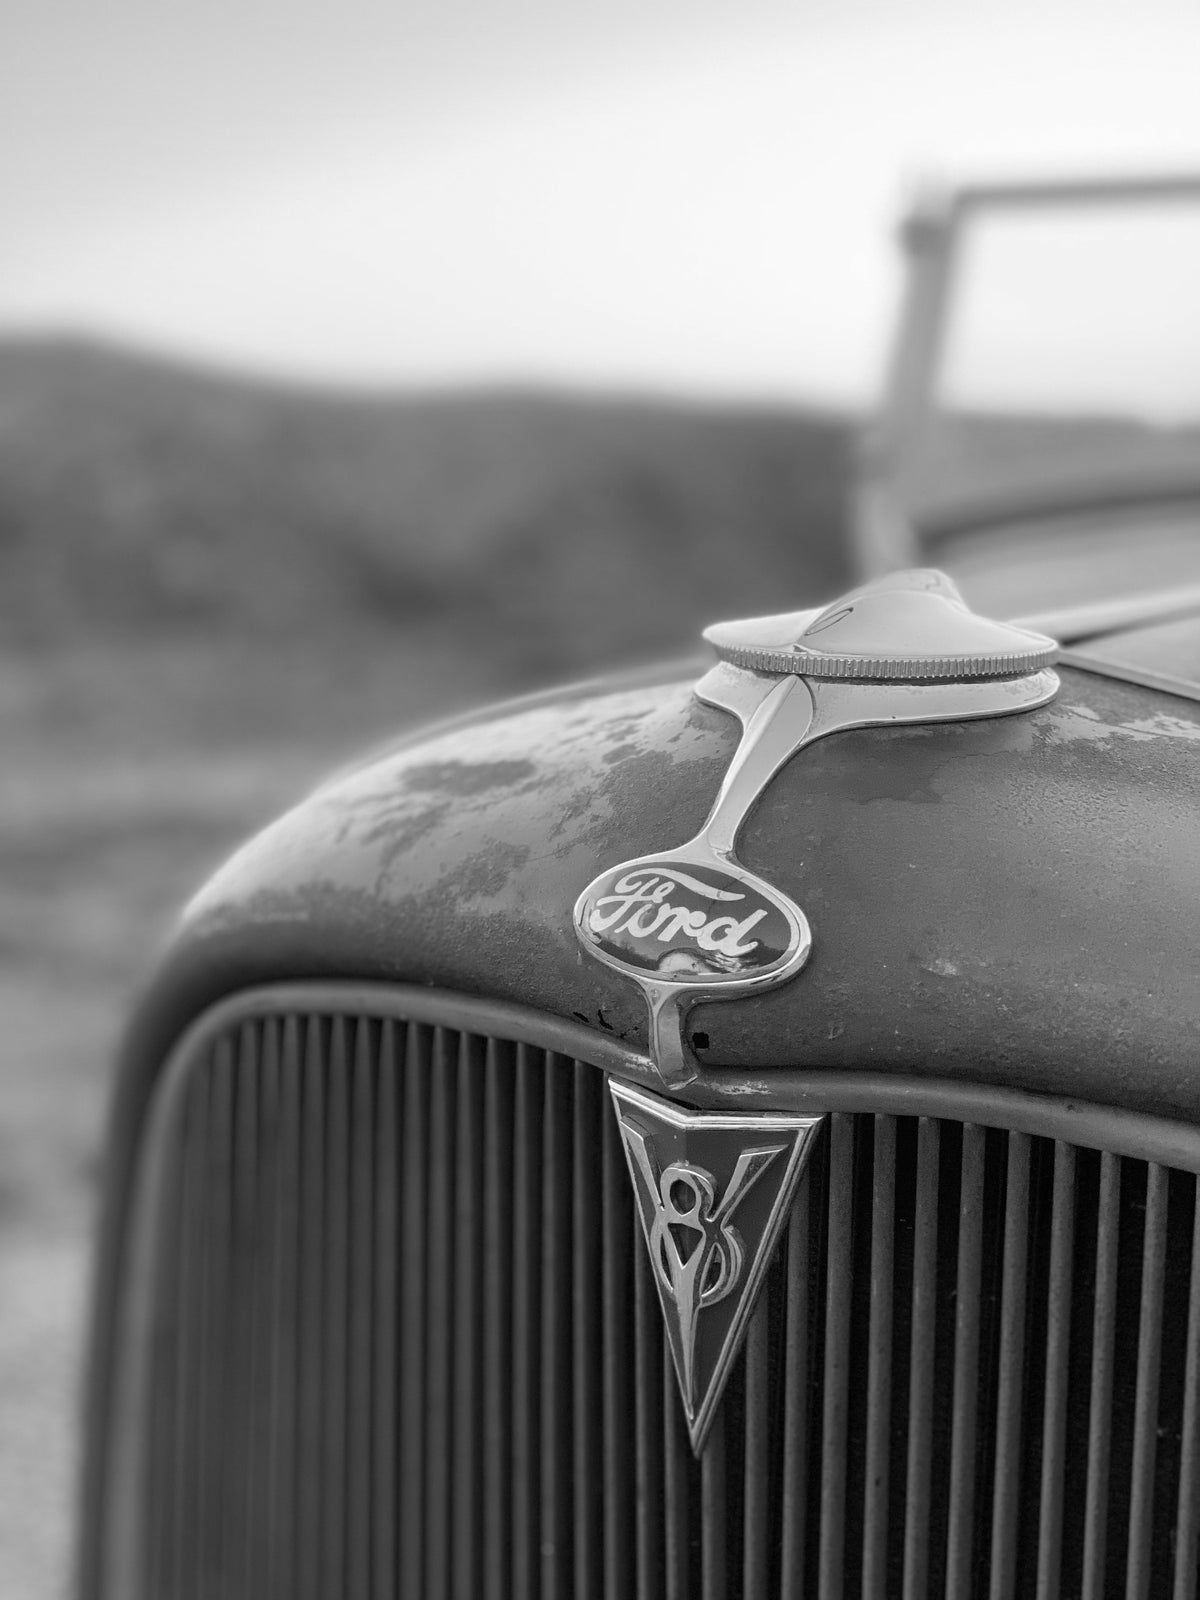 1932 Ford Roadster Grille Emblems FINE ART PRINT